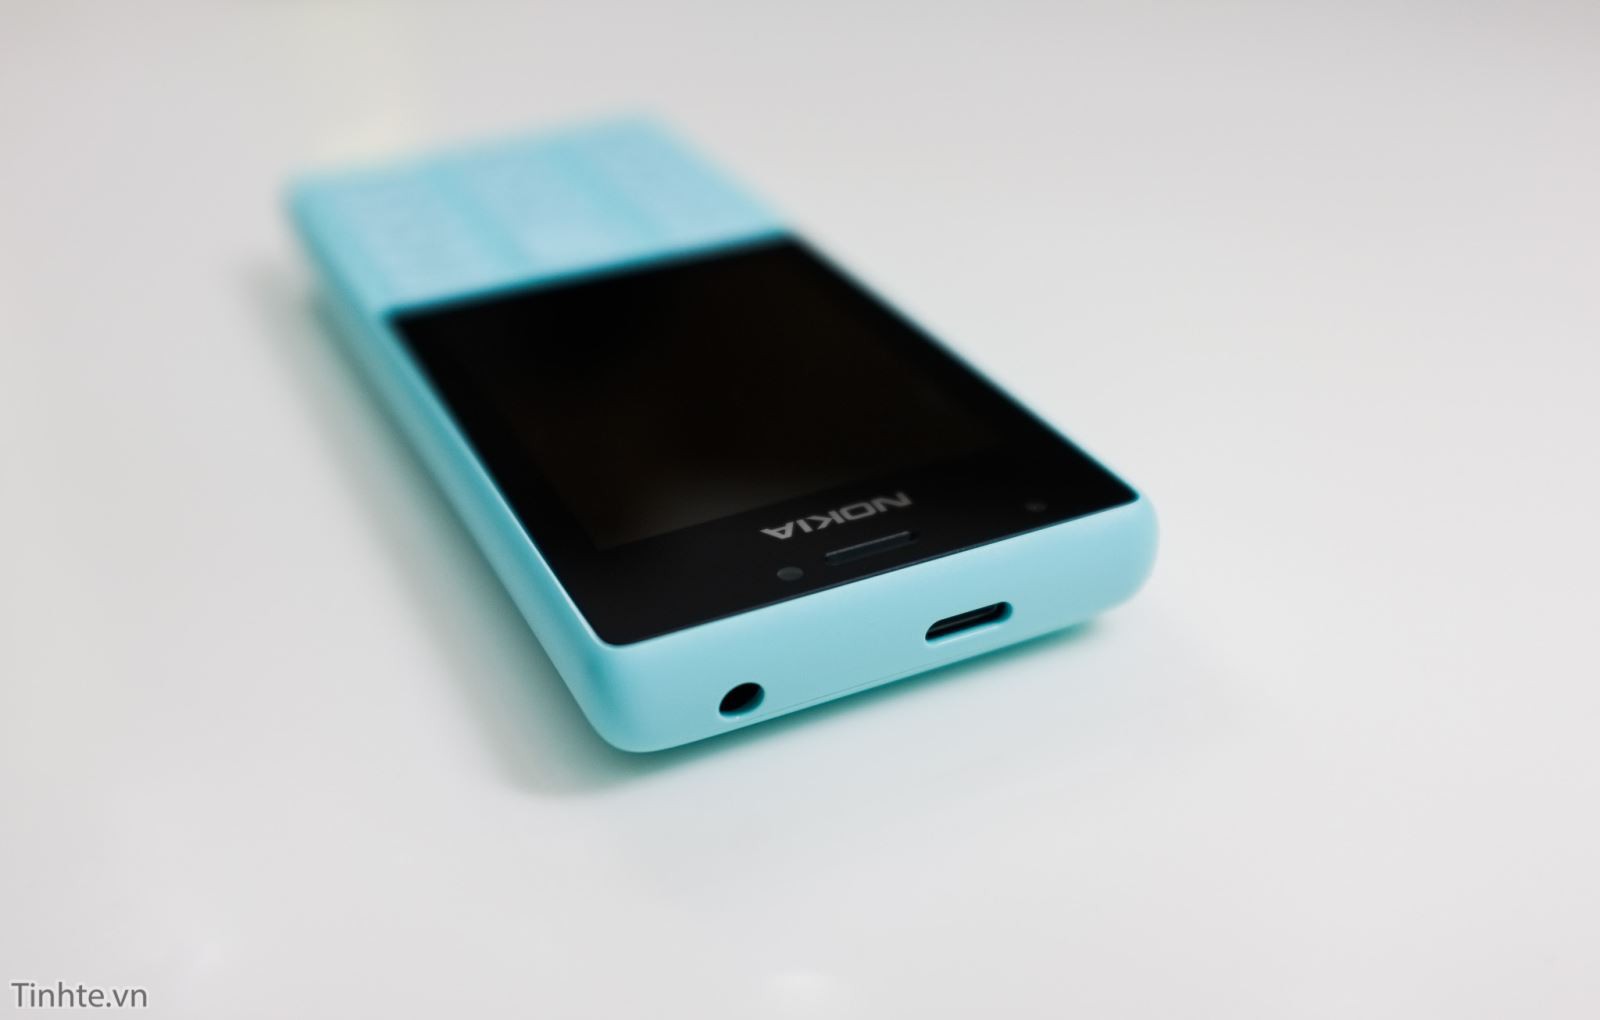 Cận cảnh chiếc Nokia 216 phiên bản màu xanh tuyệt đẹp 4